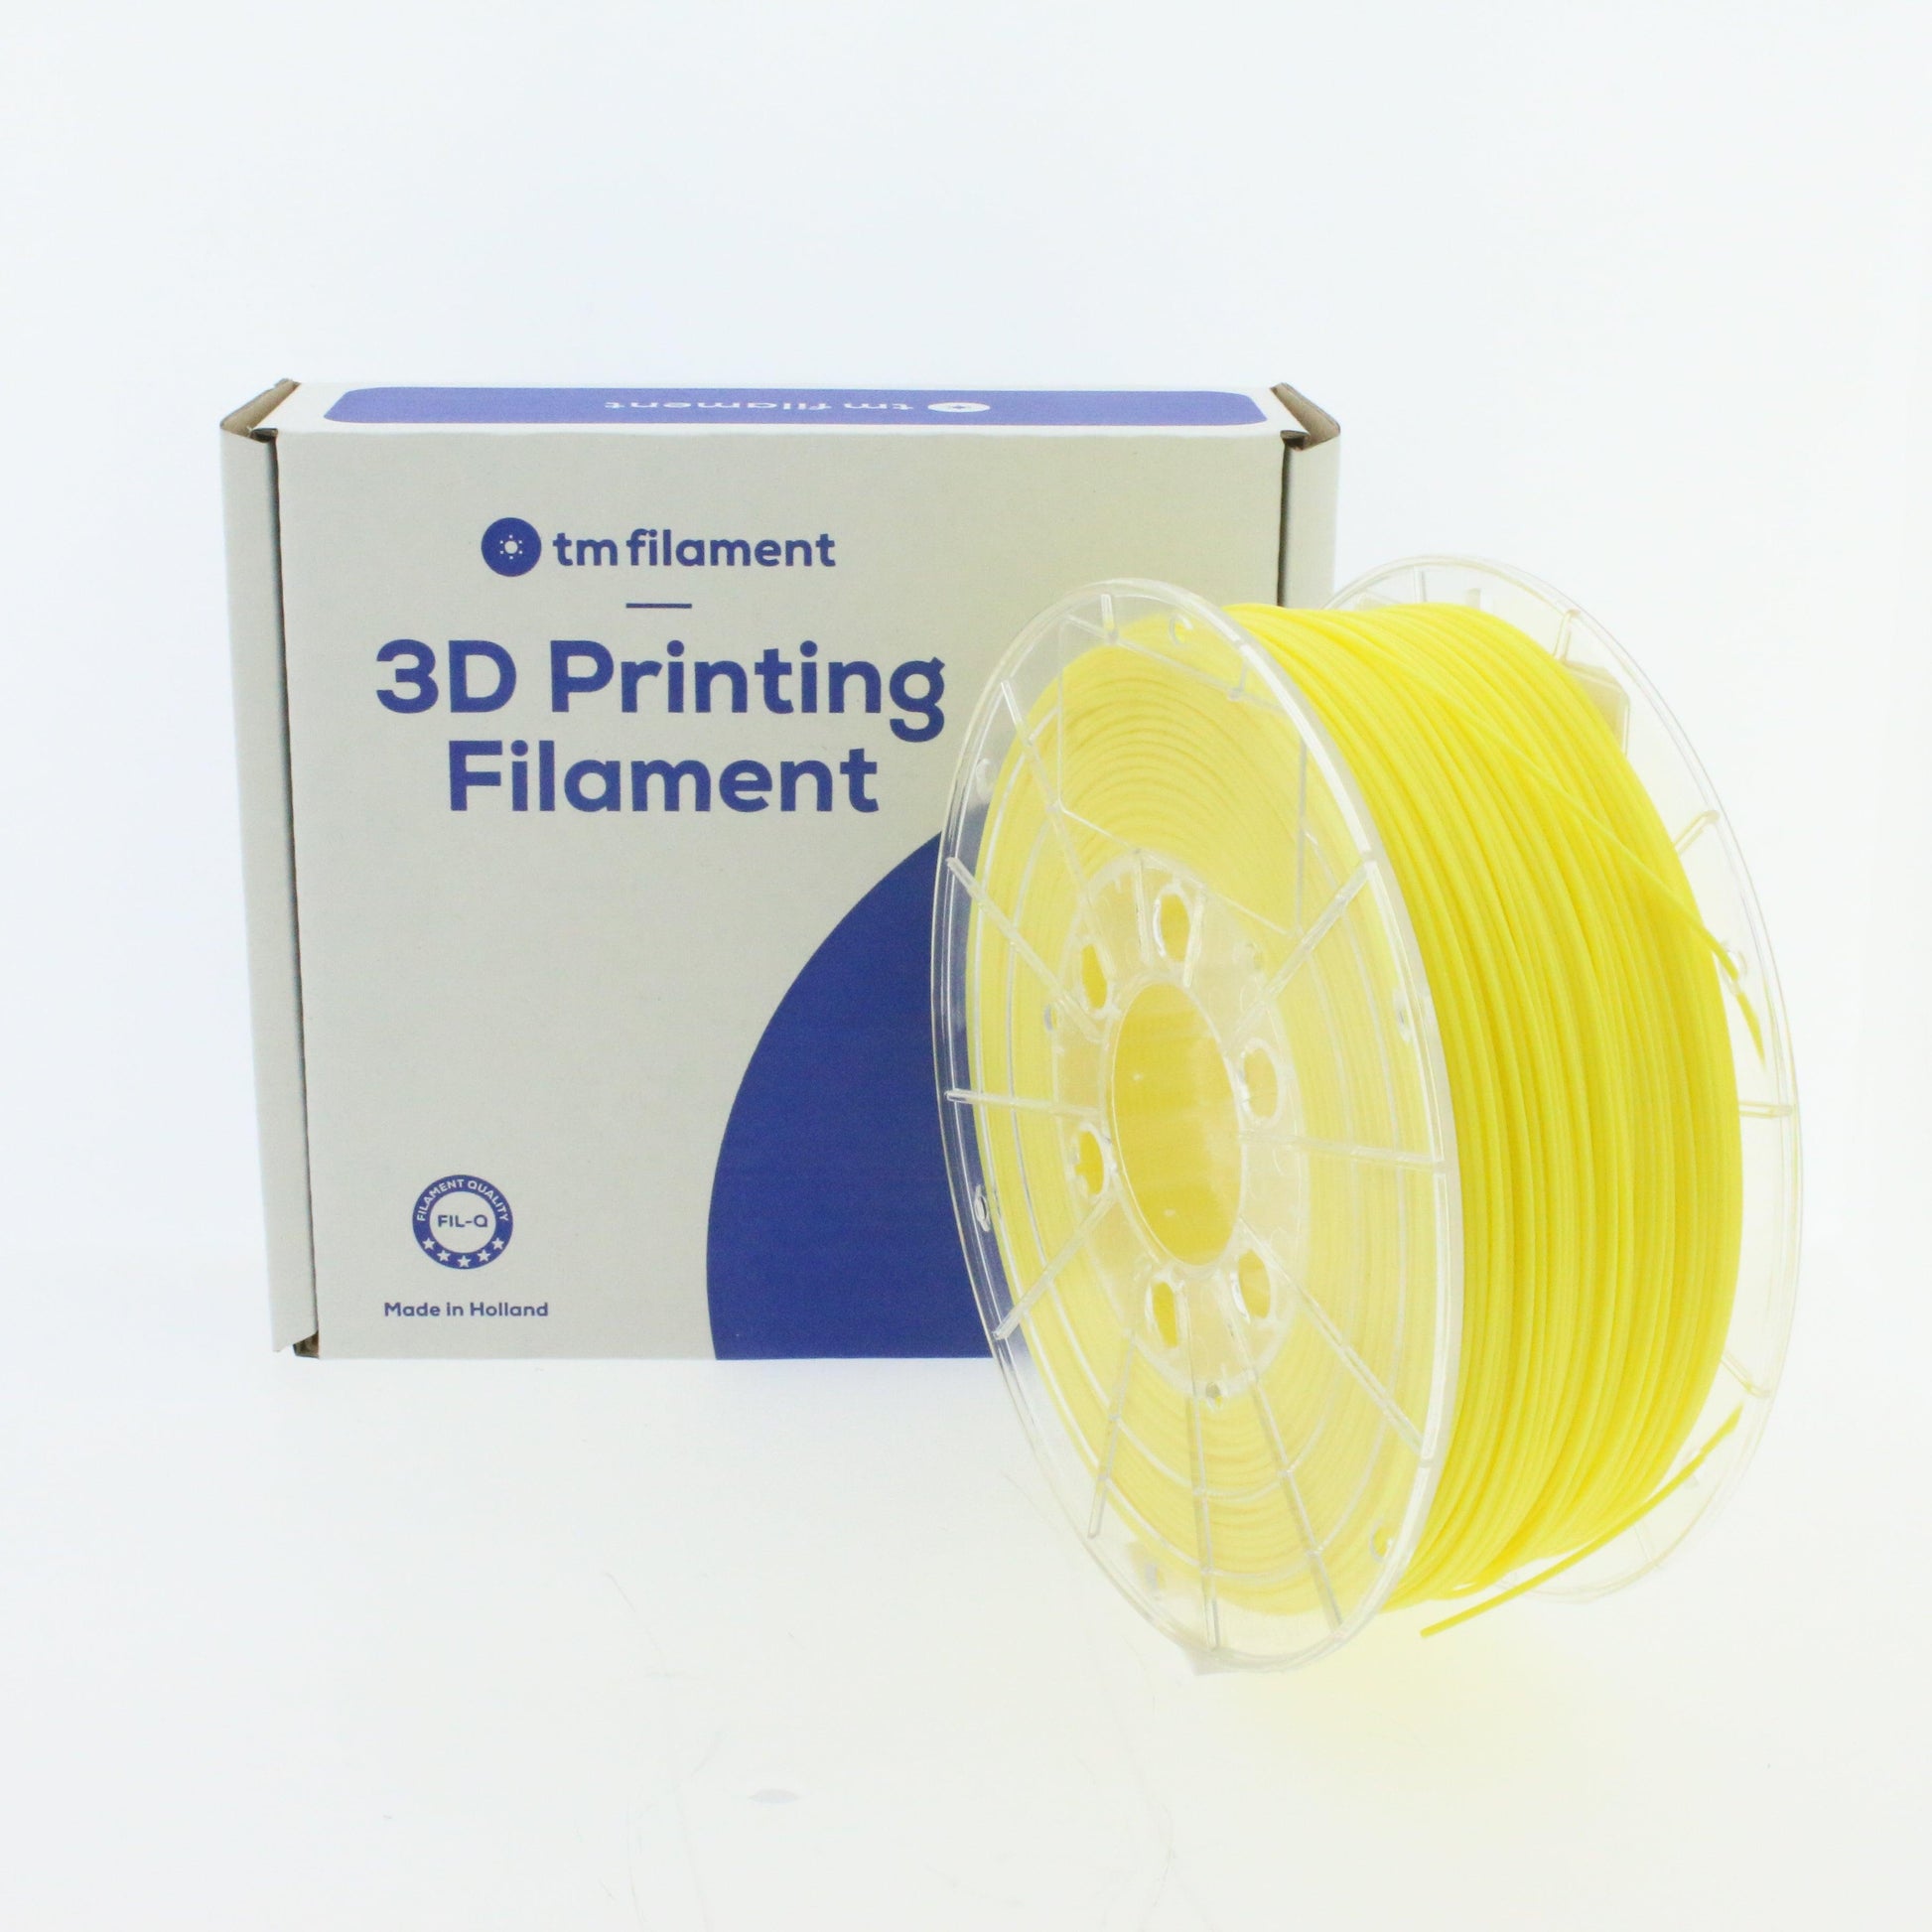 Peut-on trouver des bobines de filament 3D pas cher ?